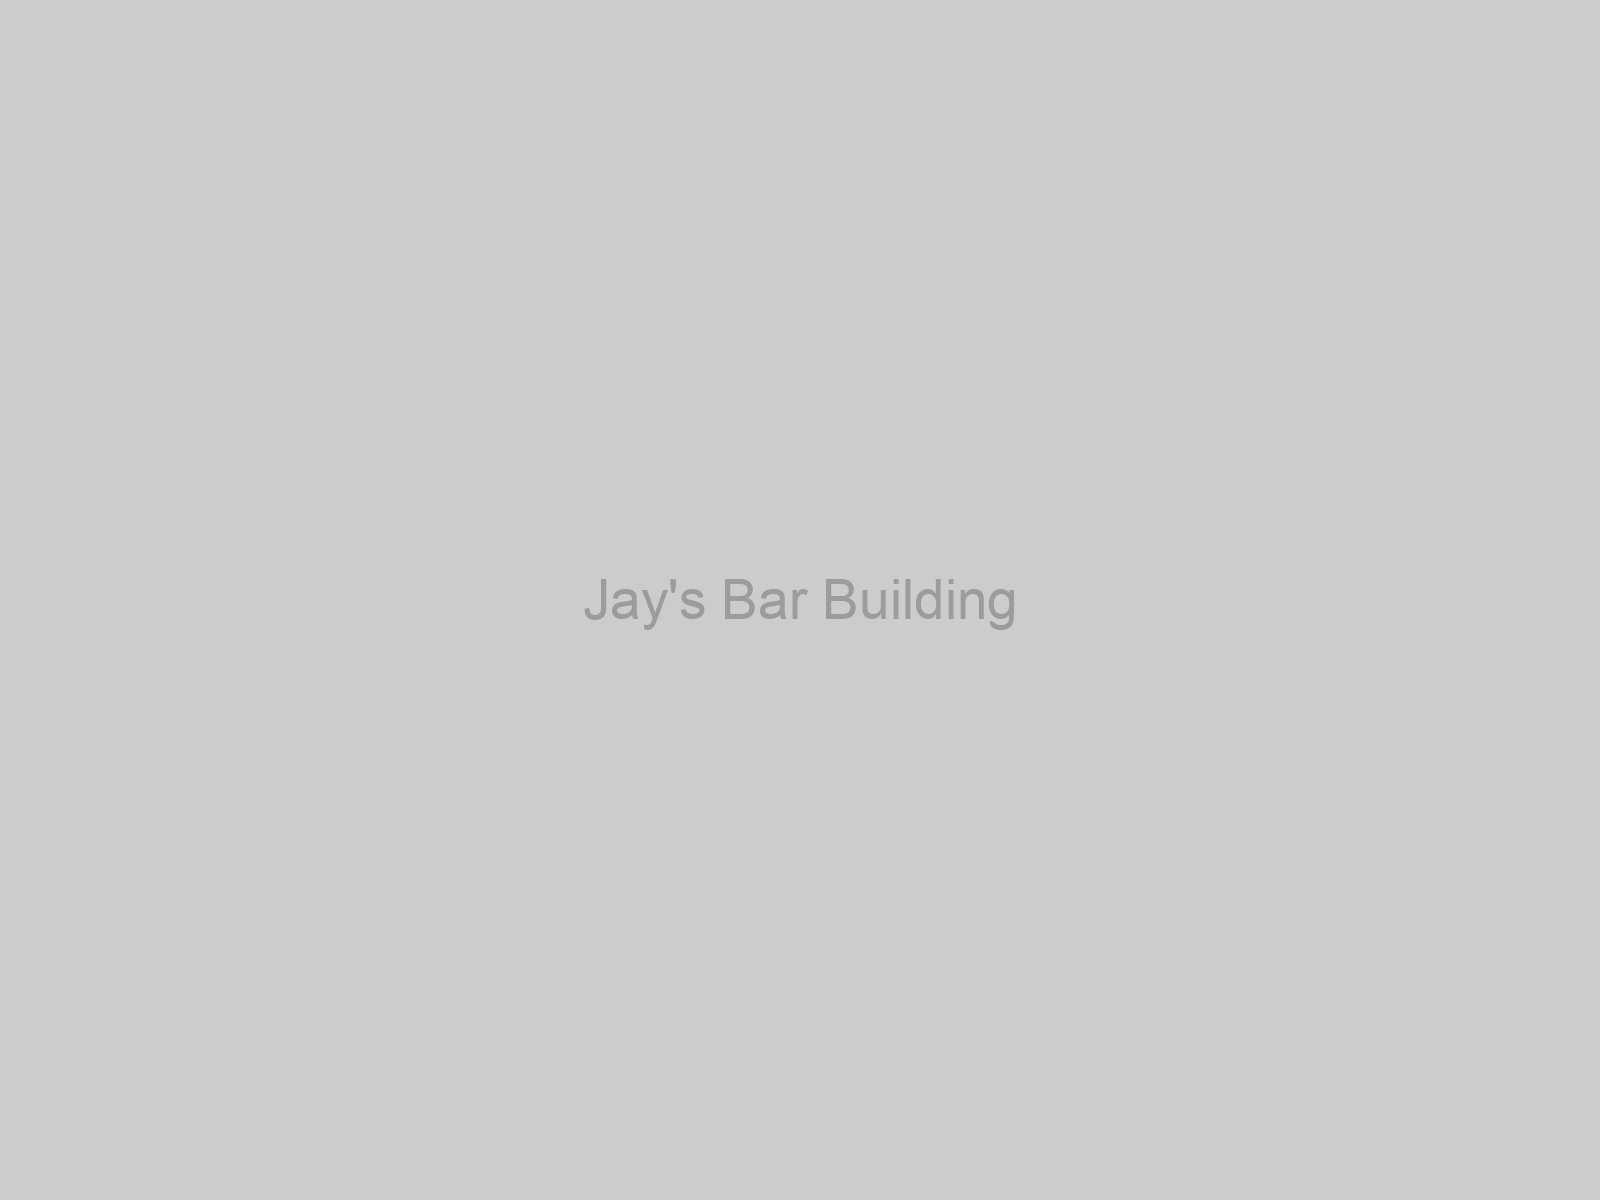 Jay's Bar Building